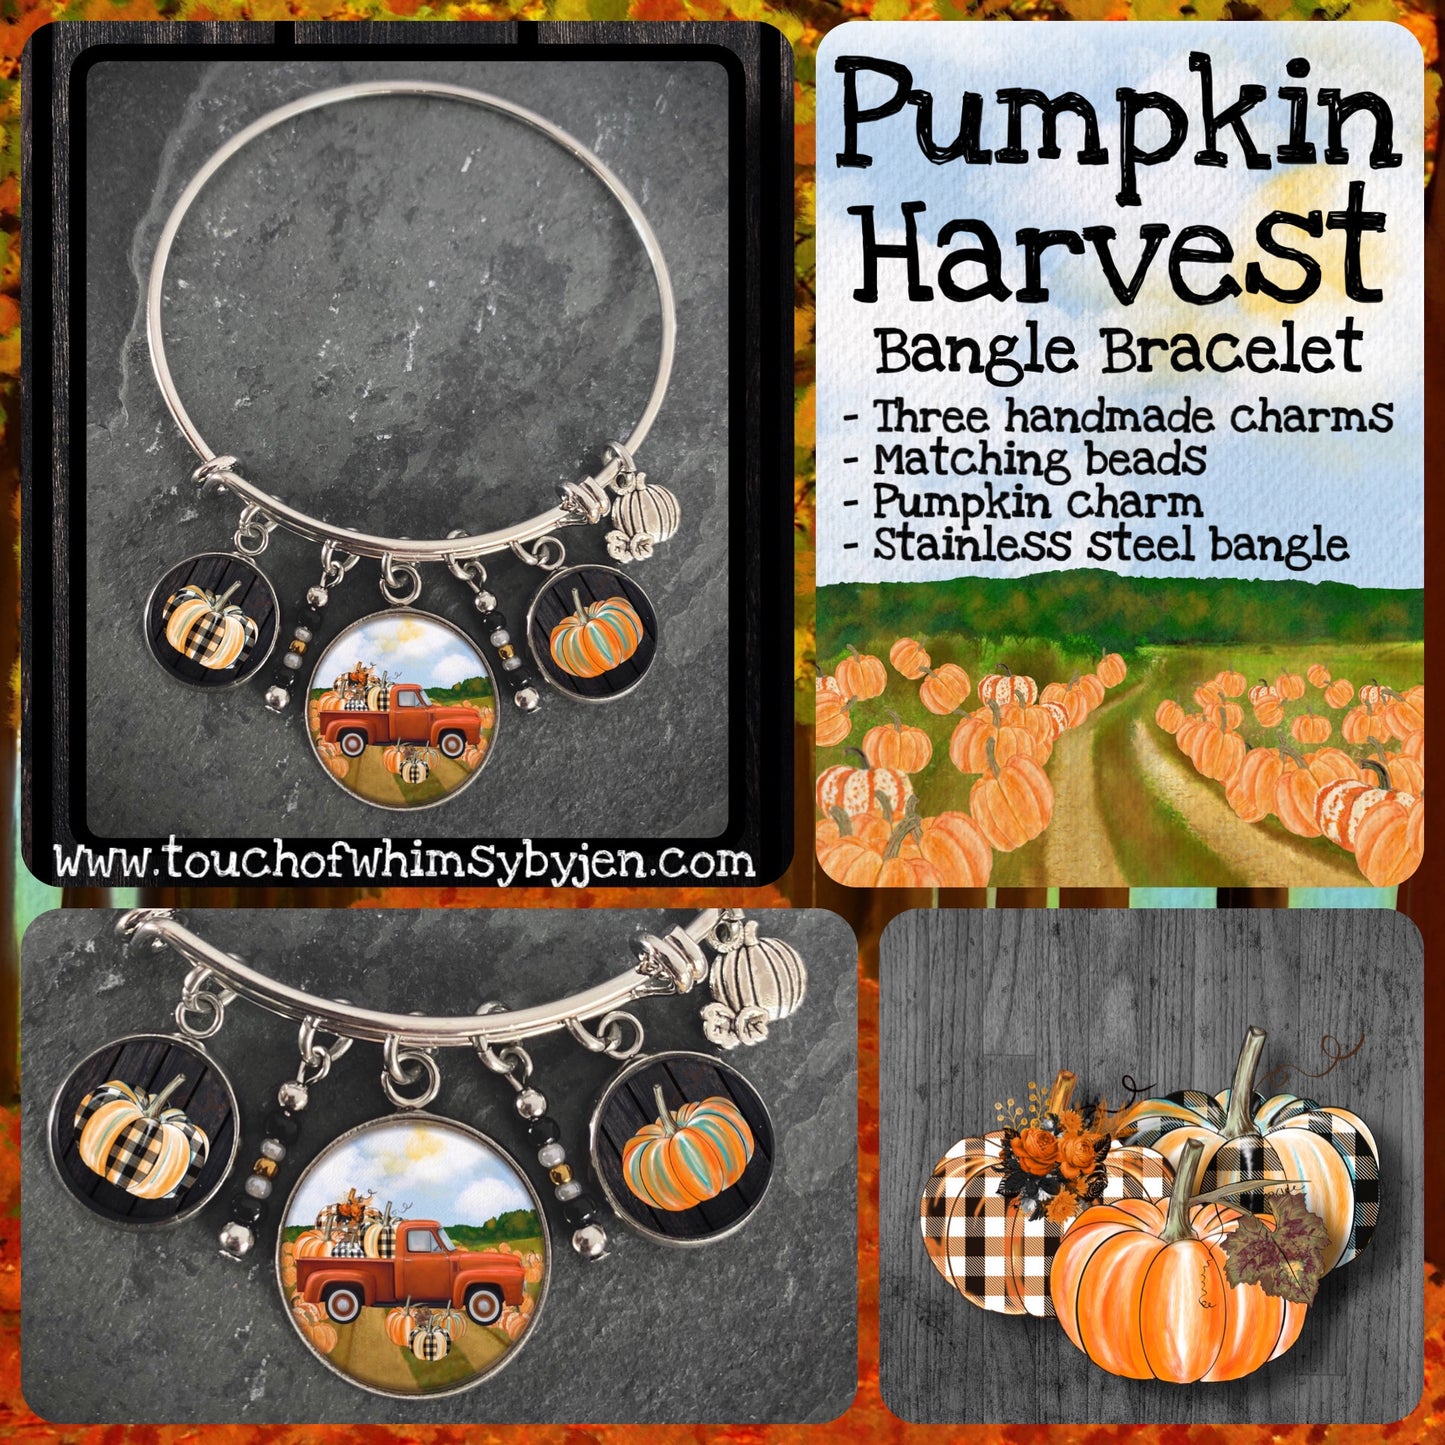 Pumpkin Harvest Bangle Bracelet